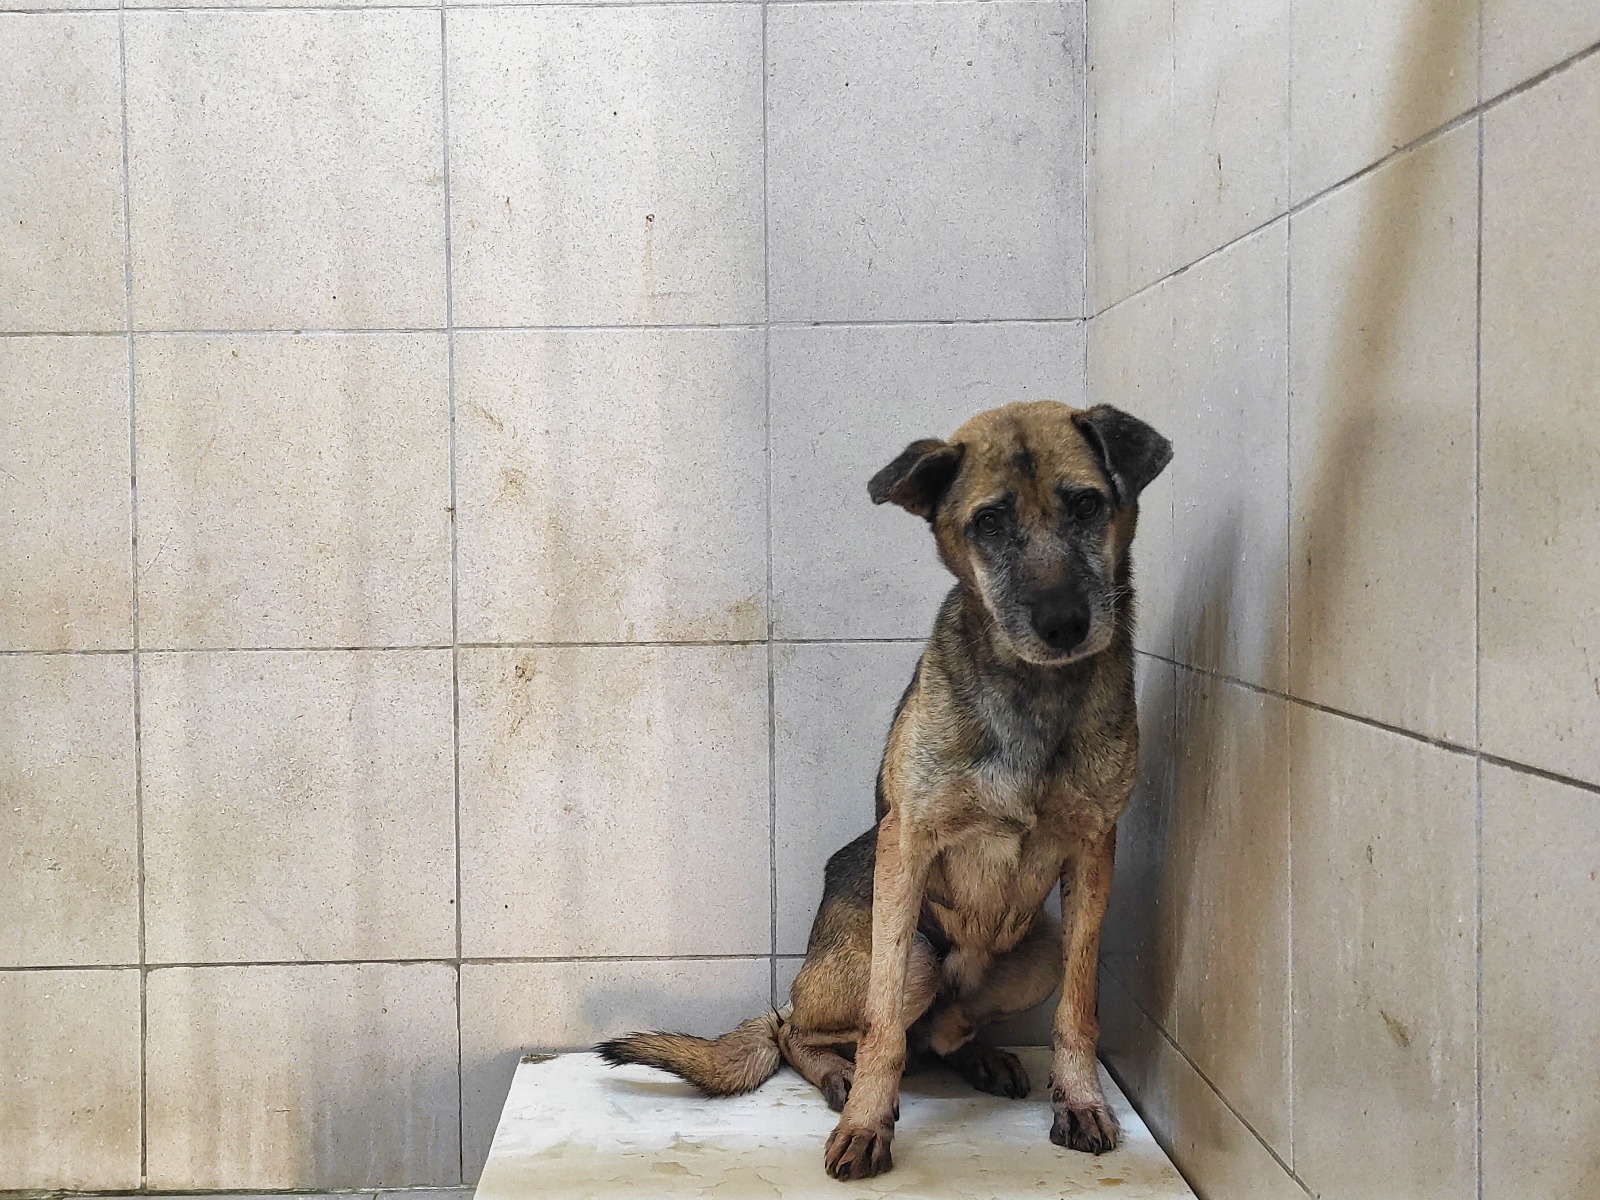 Gaziemir Belediyesi'nden Uyutulan Köpek İddialara Cevap